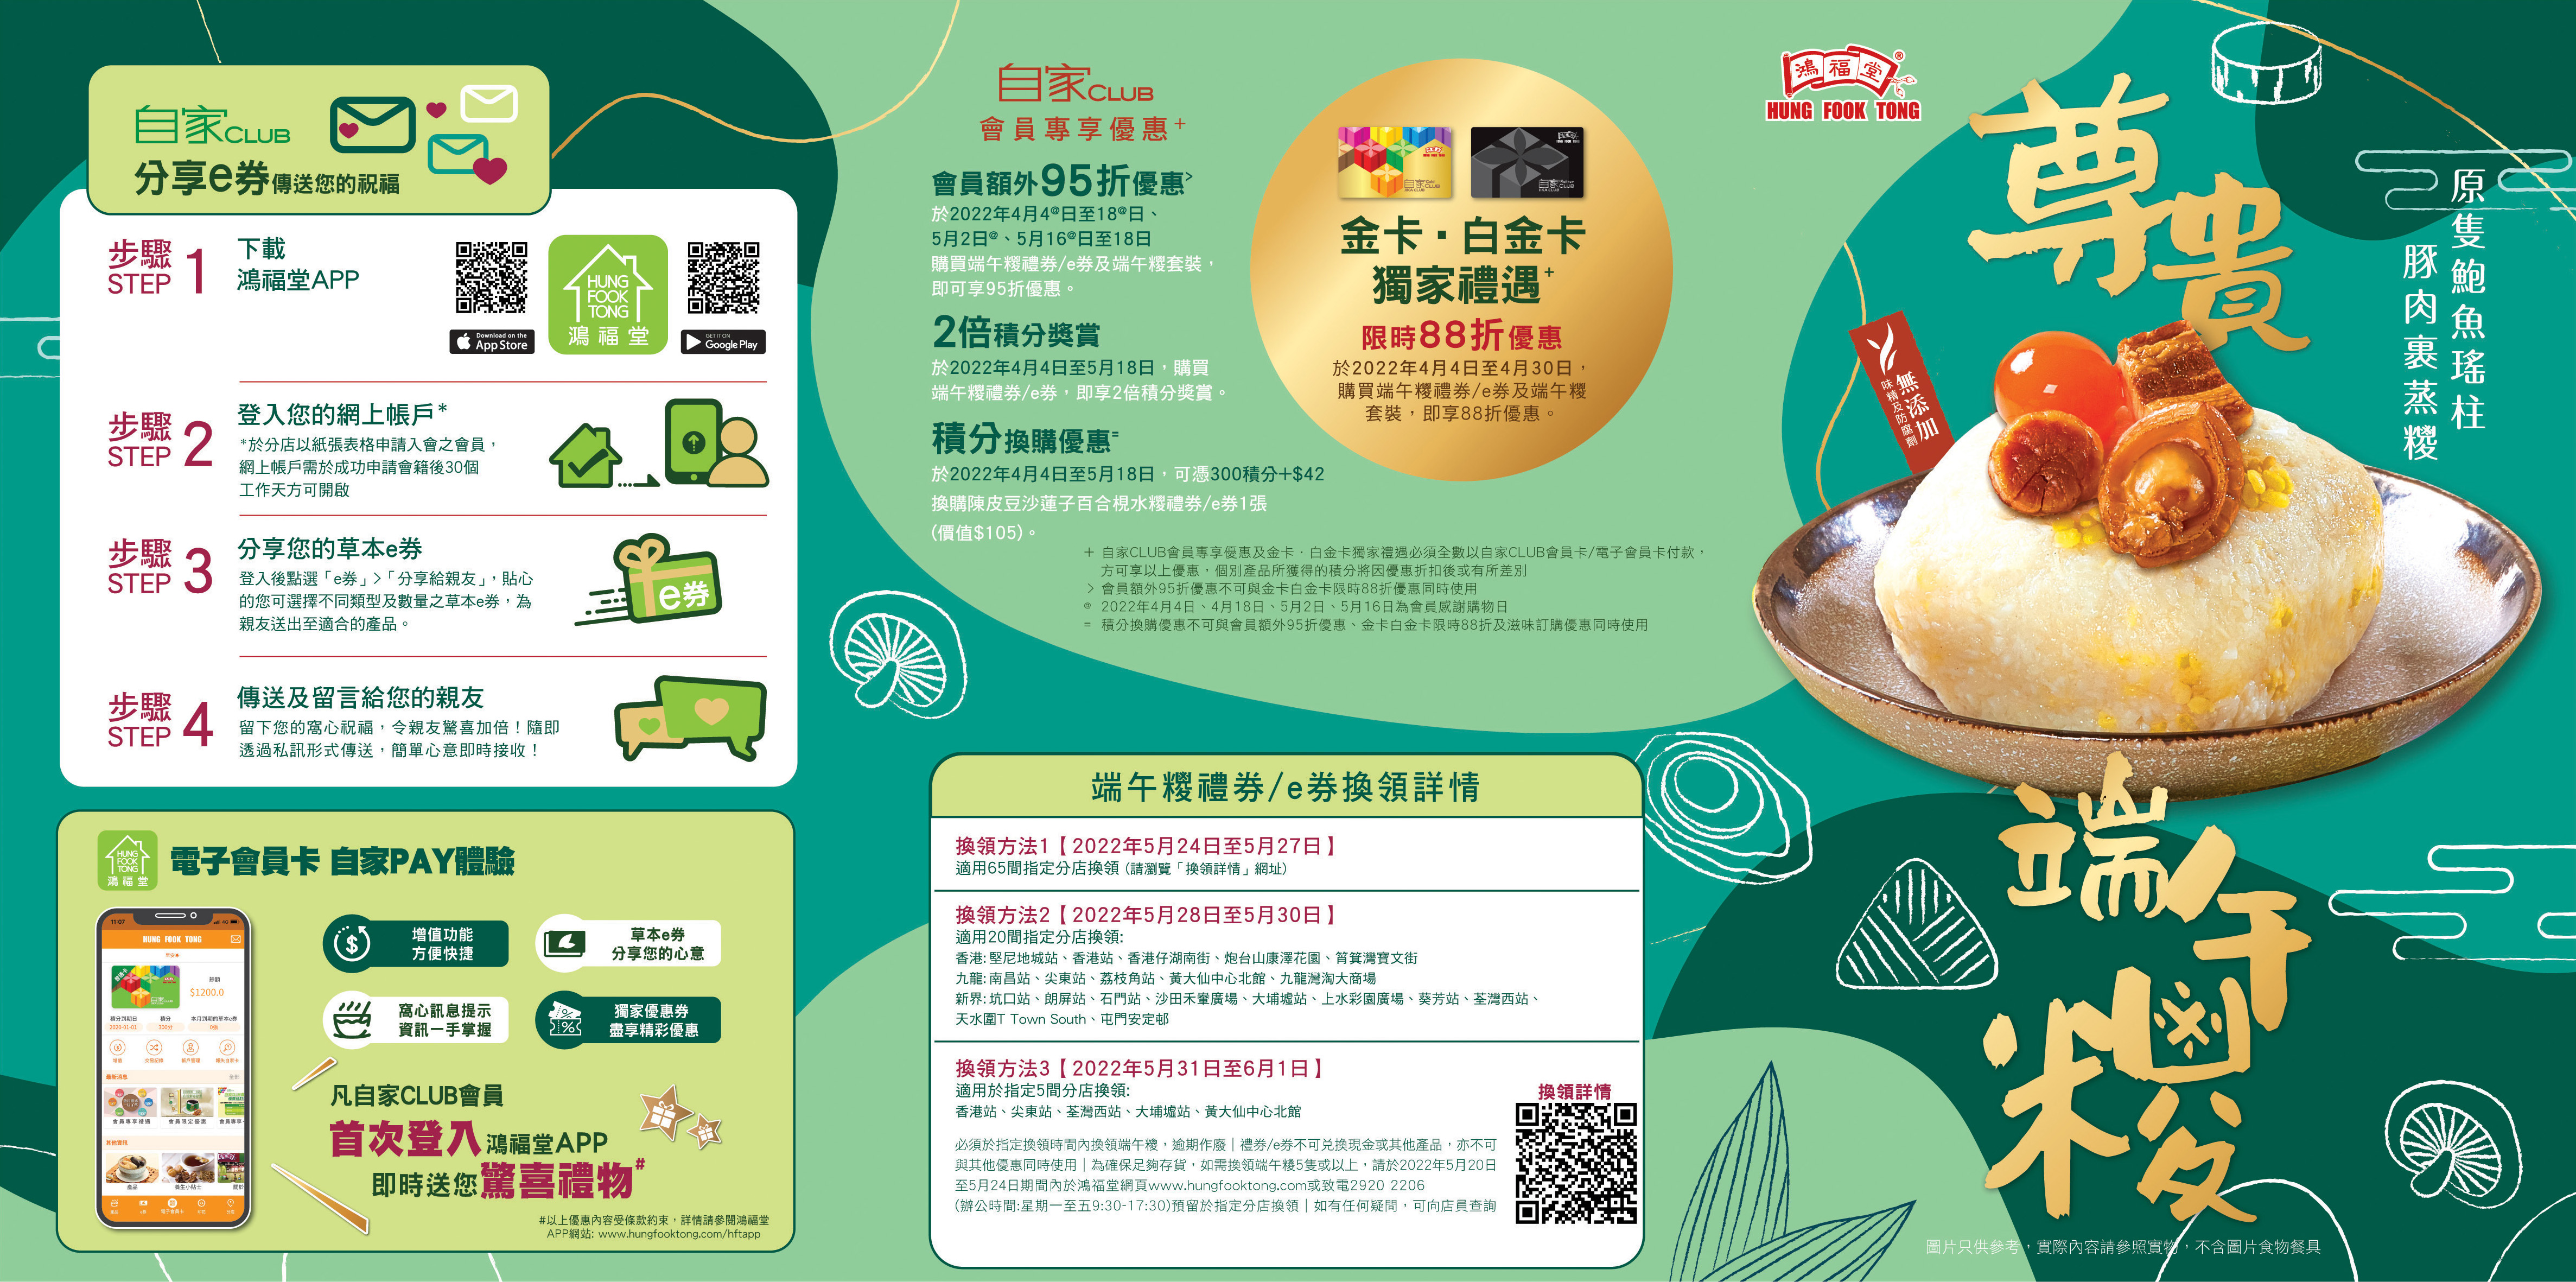 2203 074 dumpling leaflet1